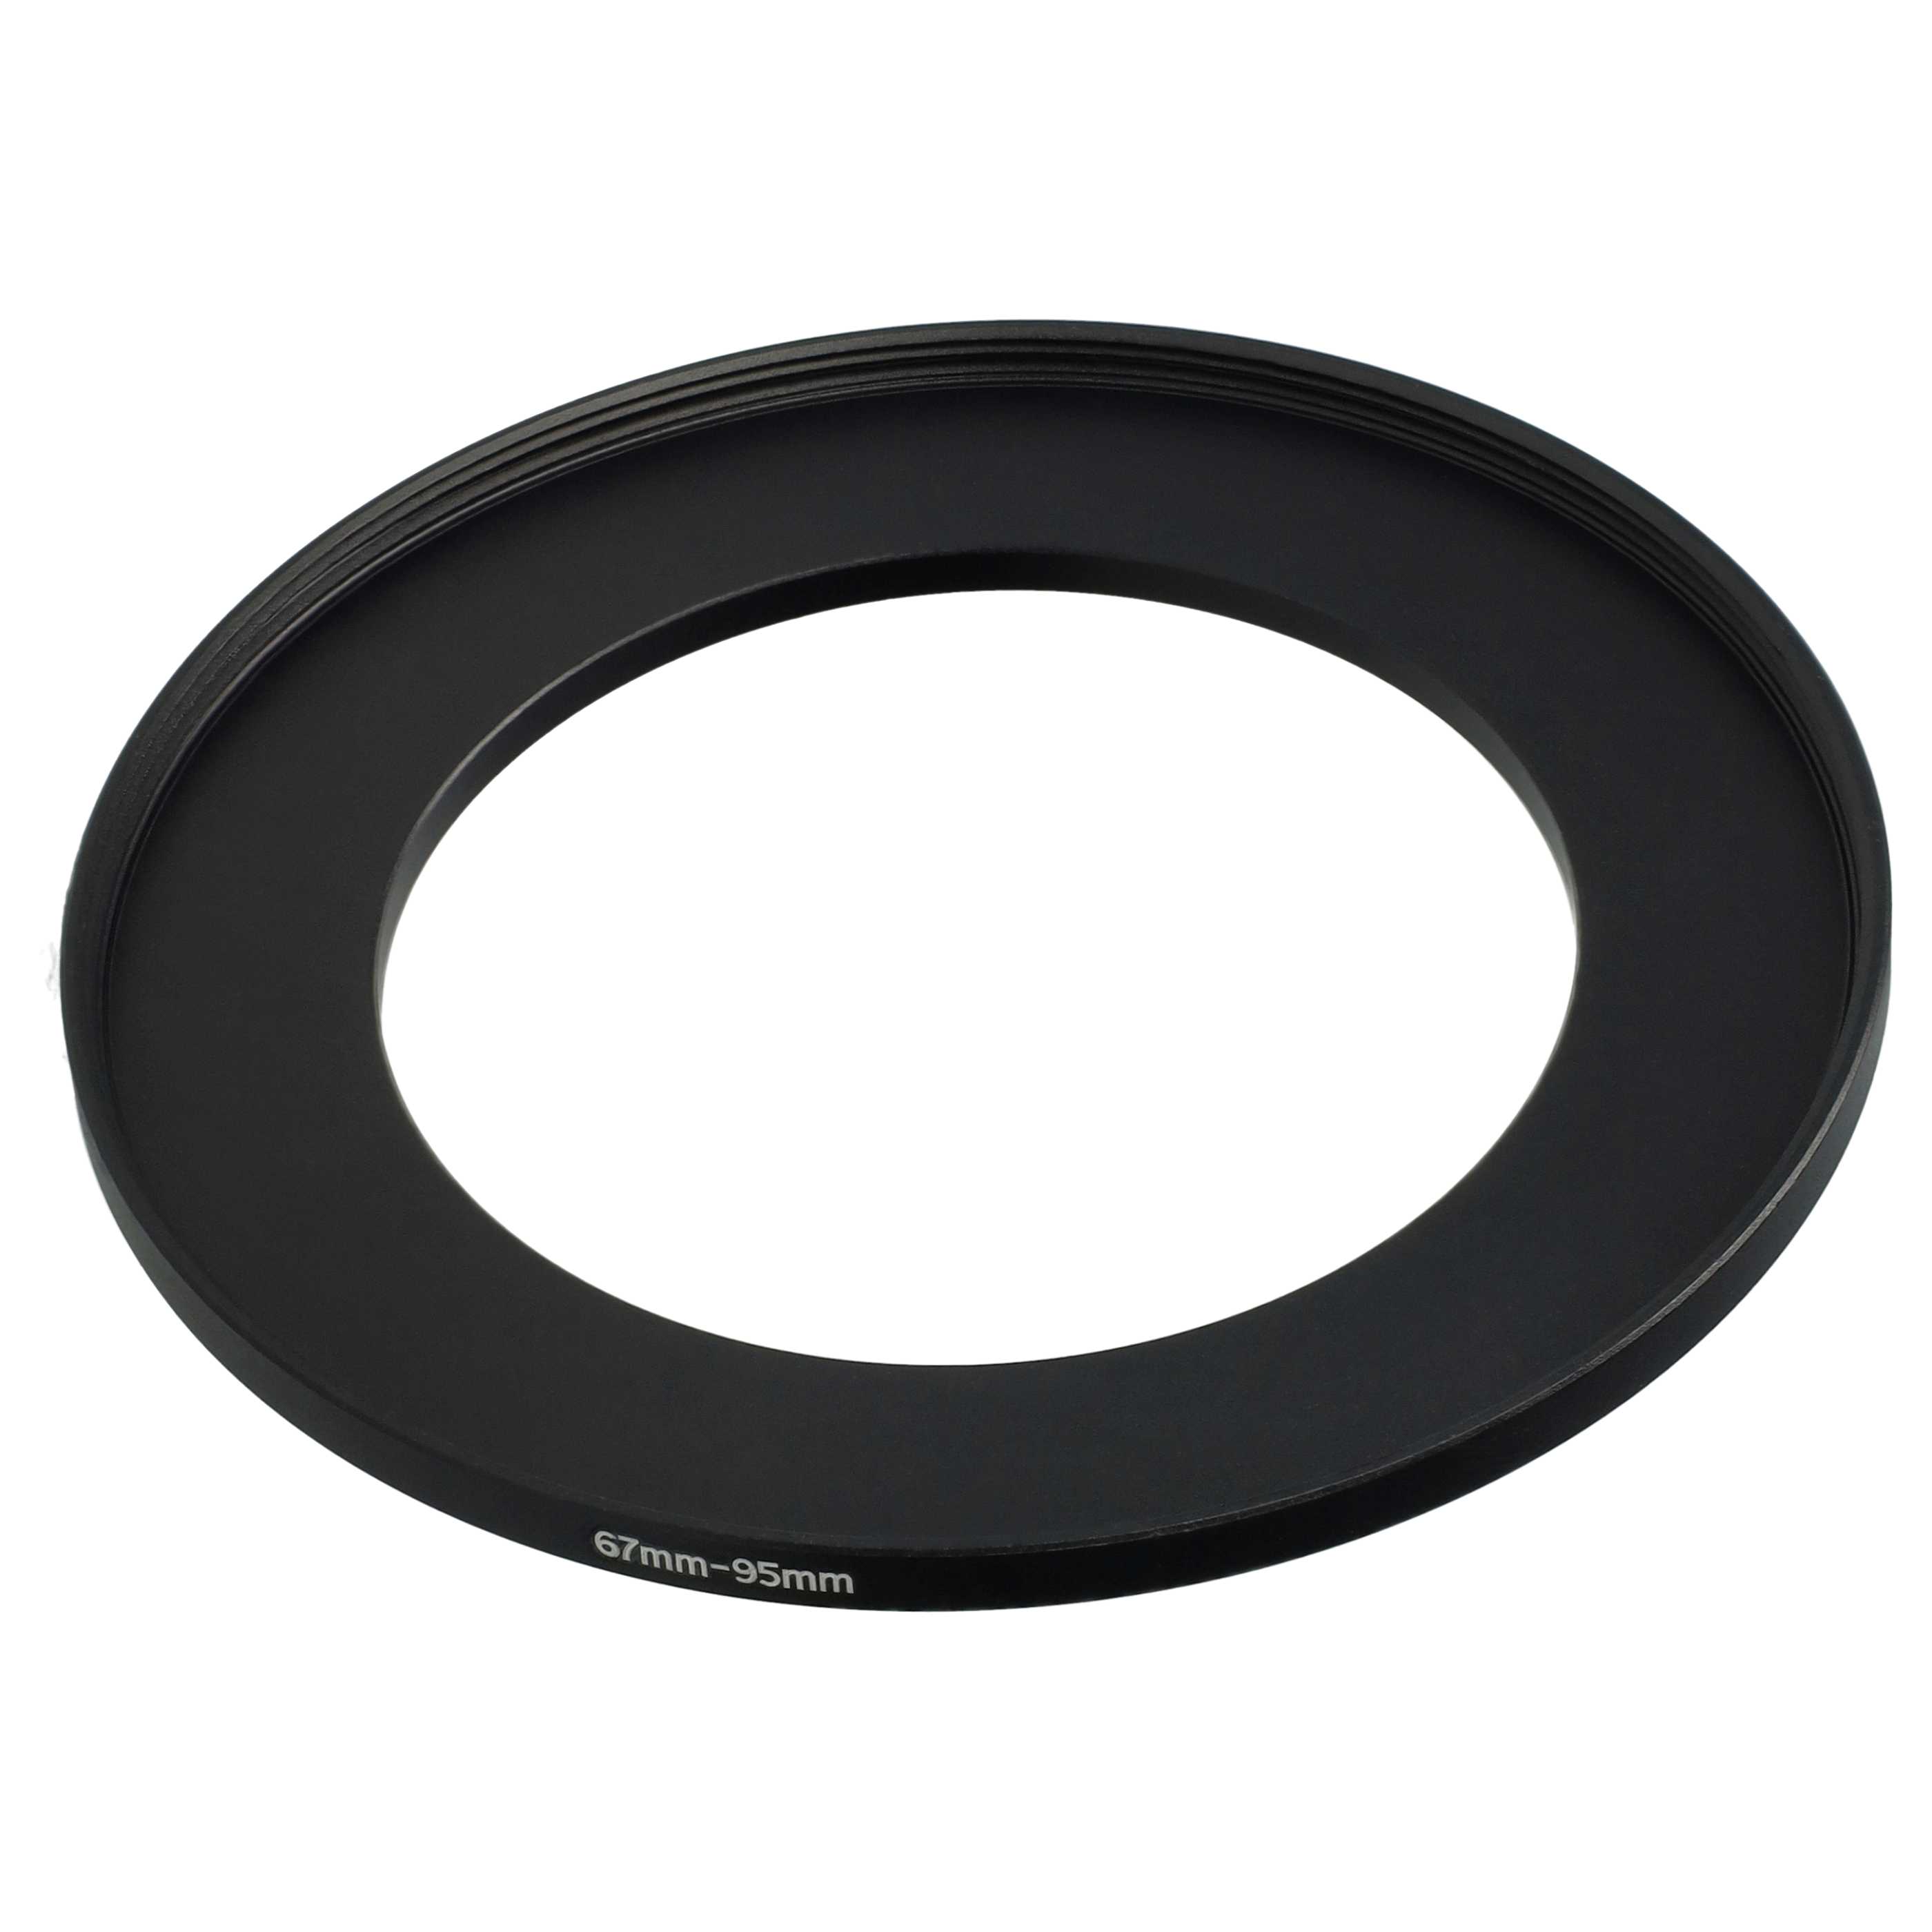 Step-Up-Ring Adapter 67 mm auf 95 mm passend für diverse Kamera-Objektive - Filteradapter